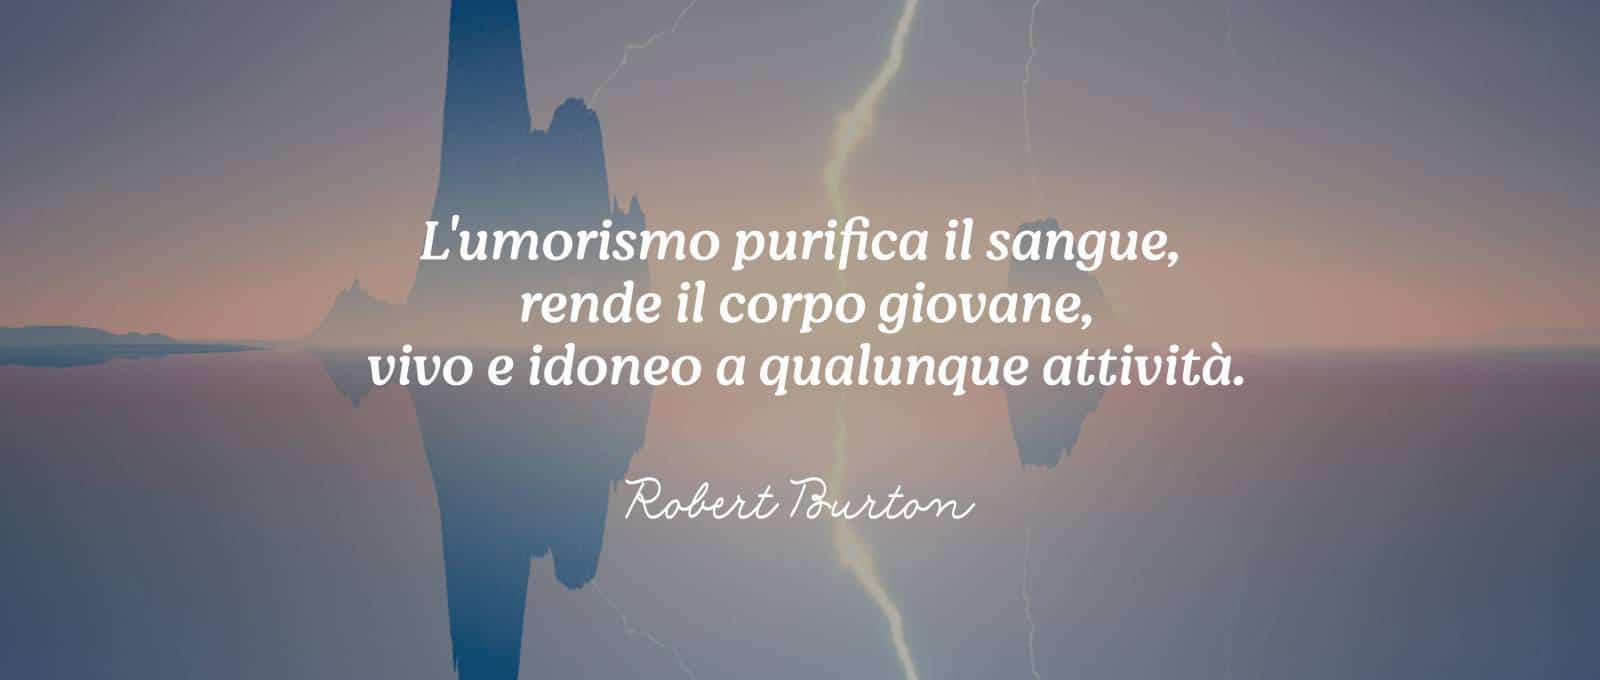 Frasi Robert Burton